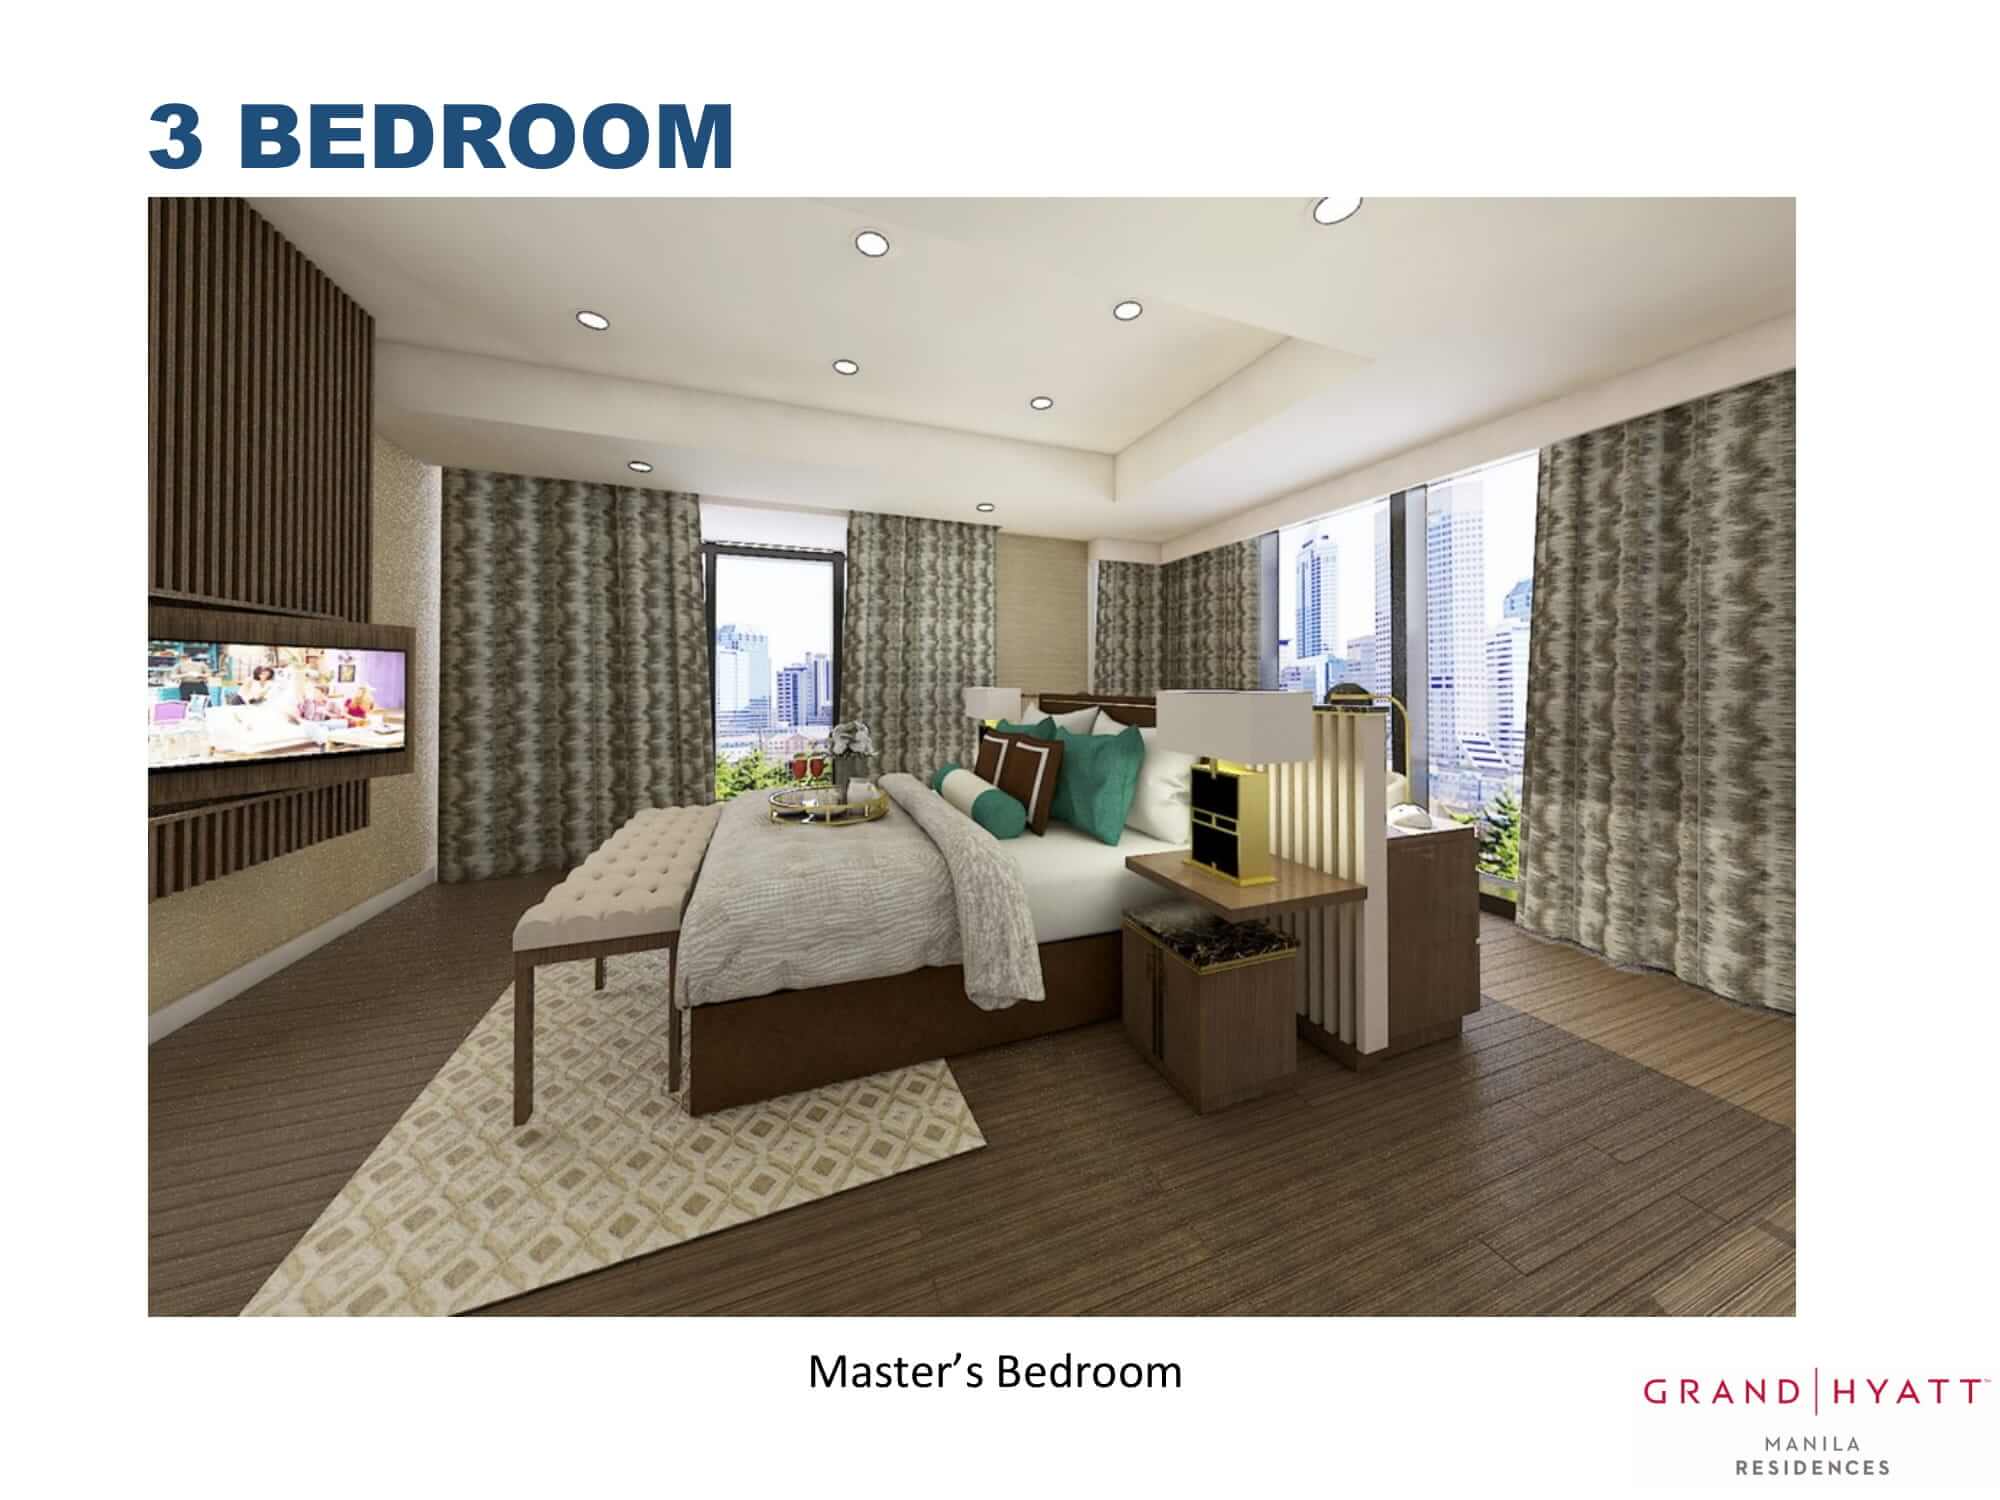 3 BEDROOMS - GRAND HYATT RESIDENCES GOLD TOWER